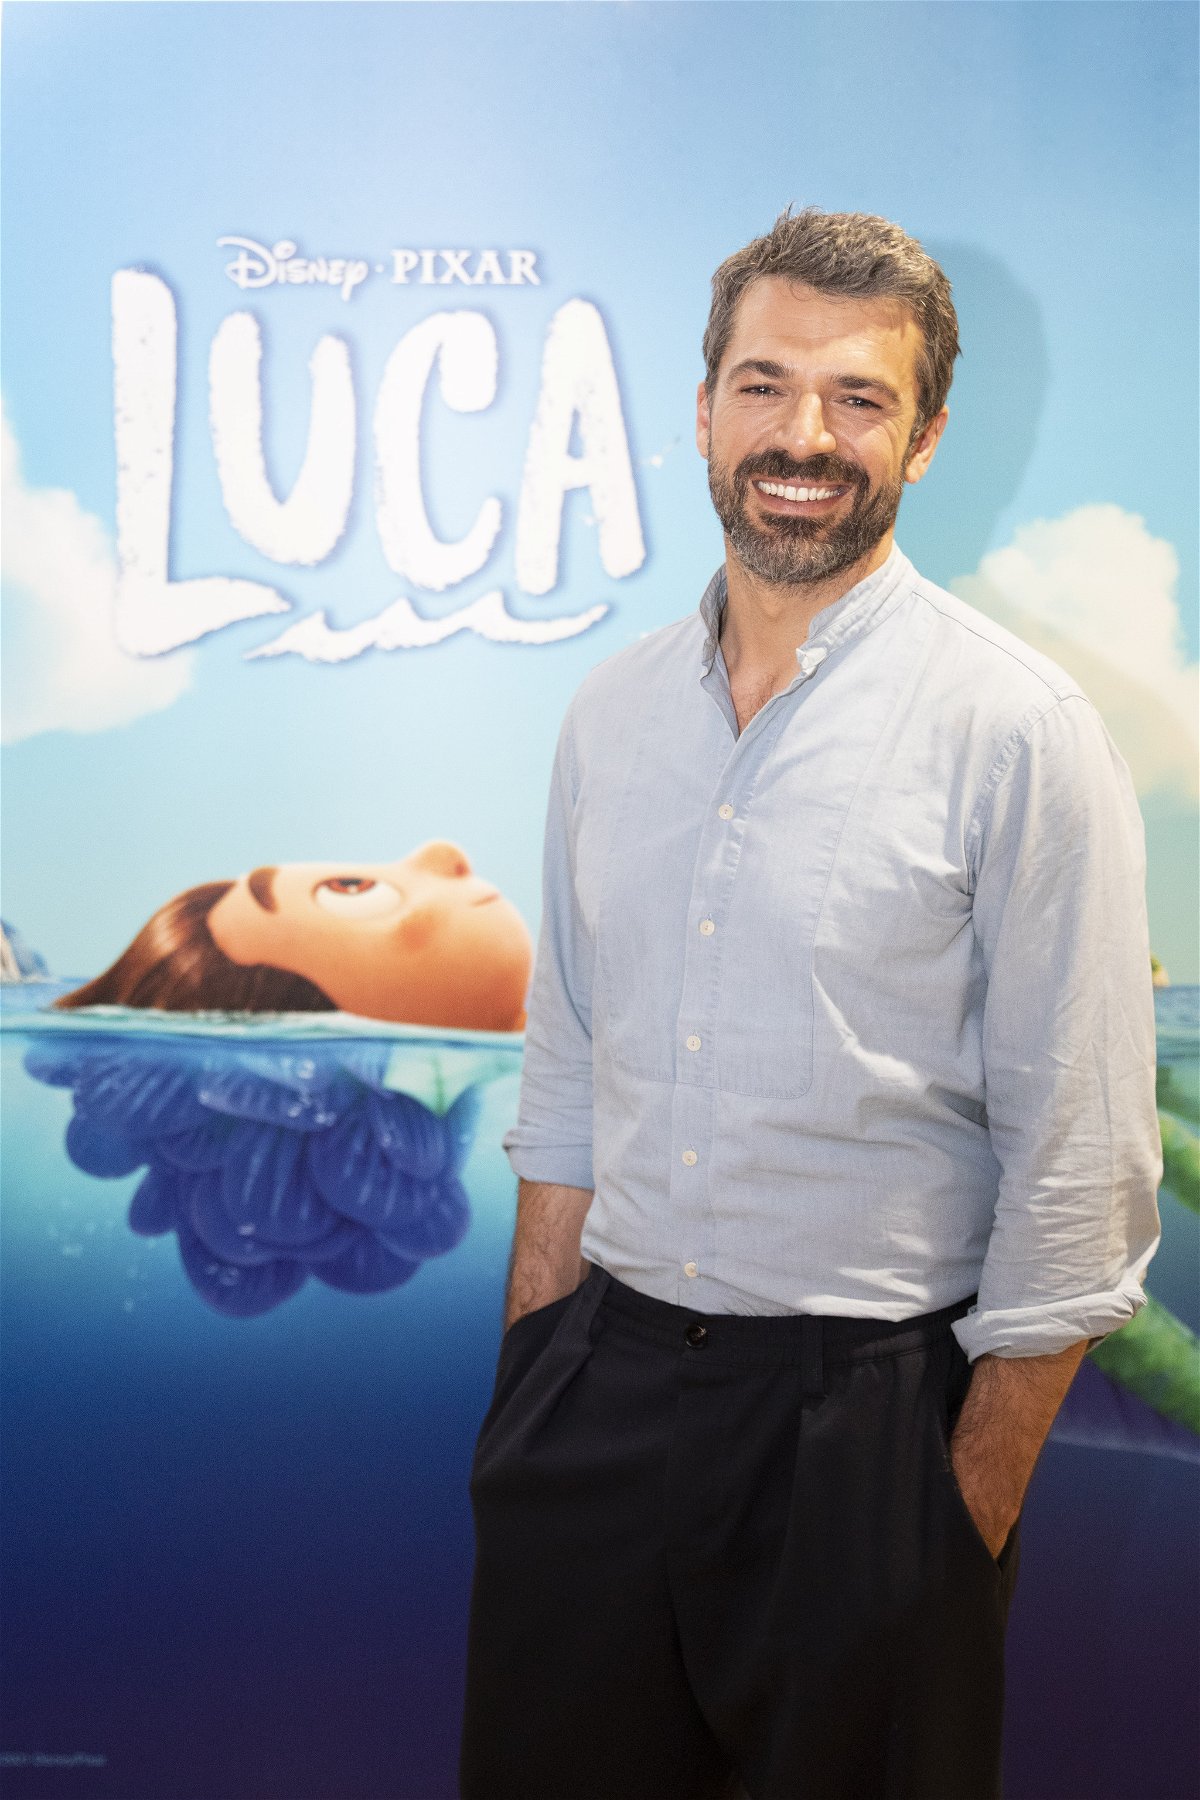 Luca: Luca Argentero